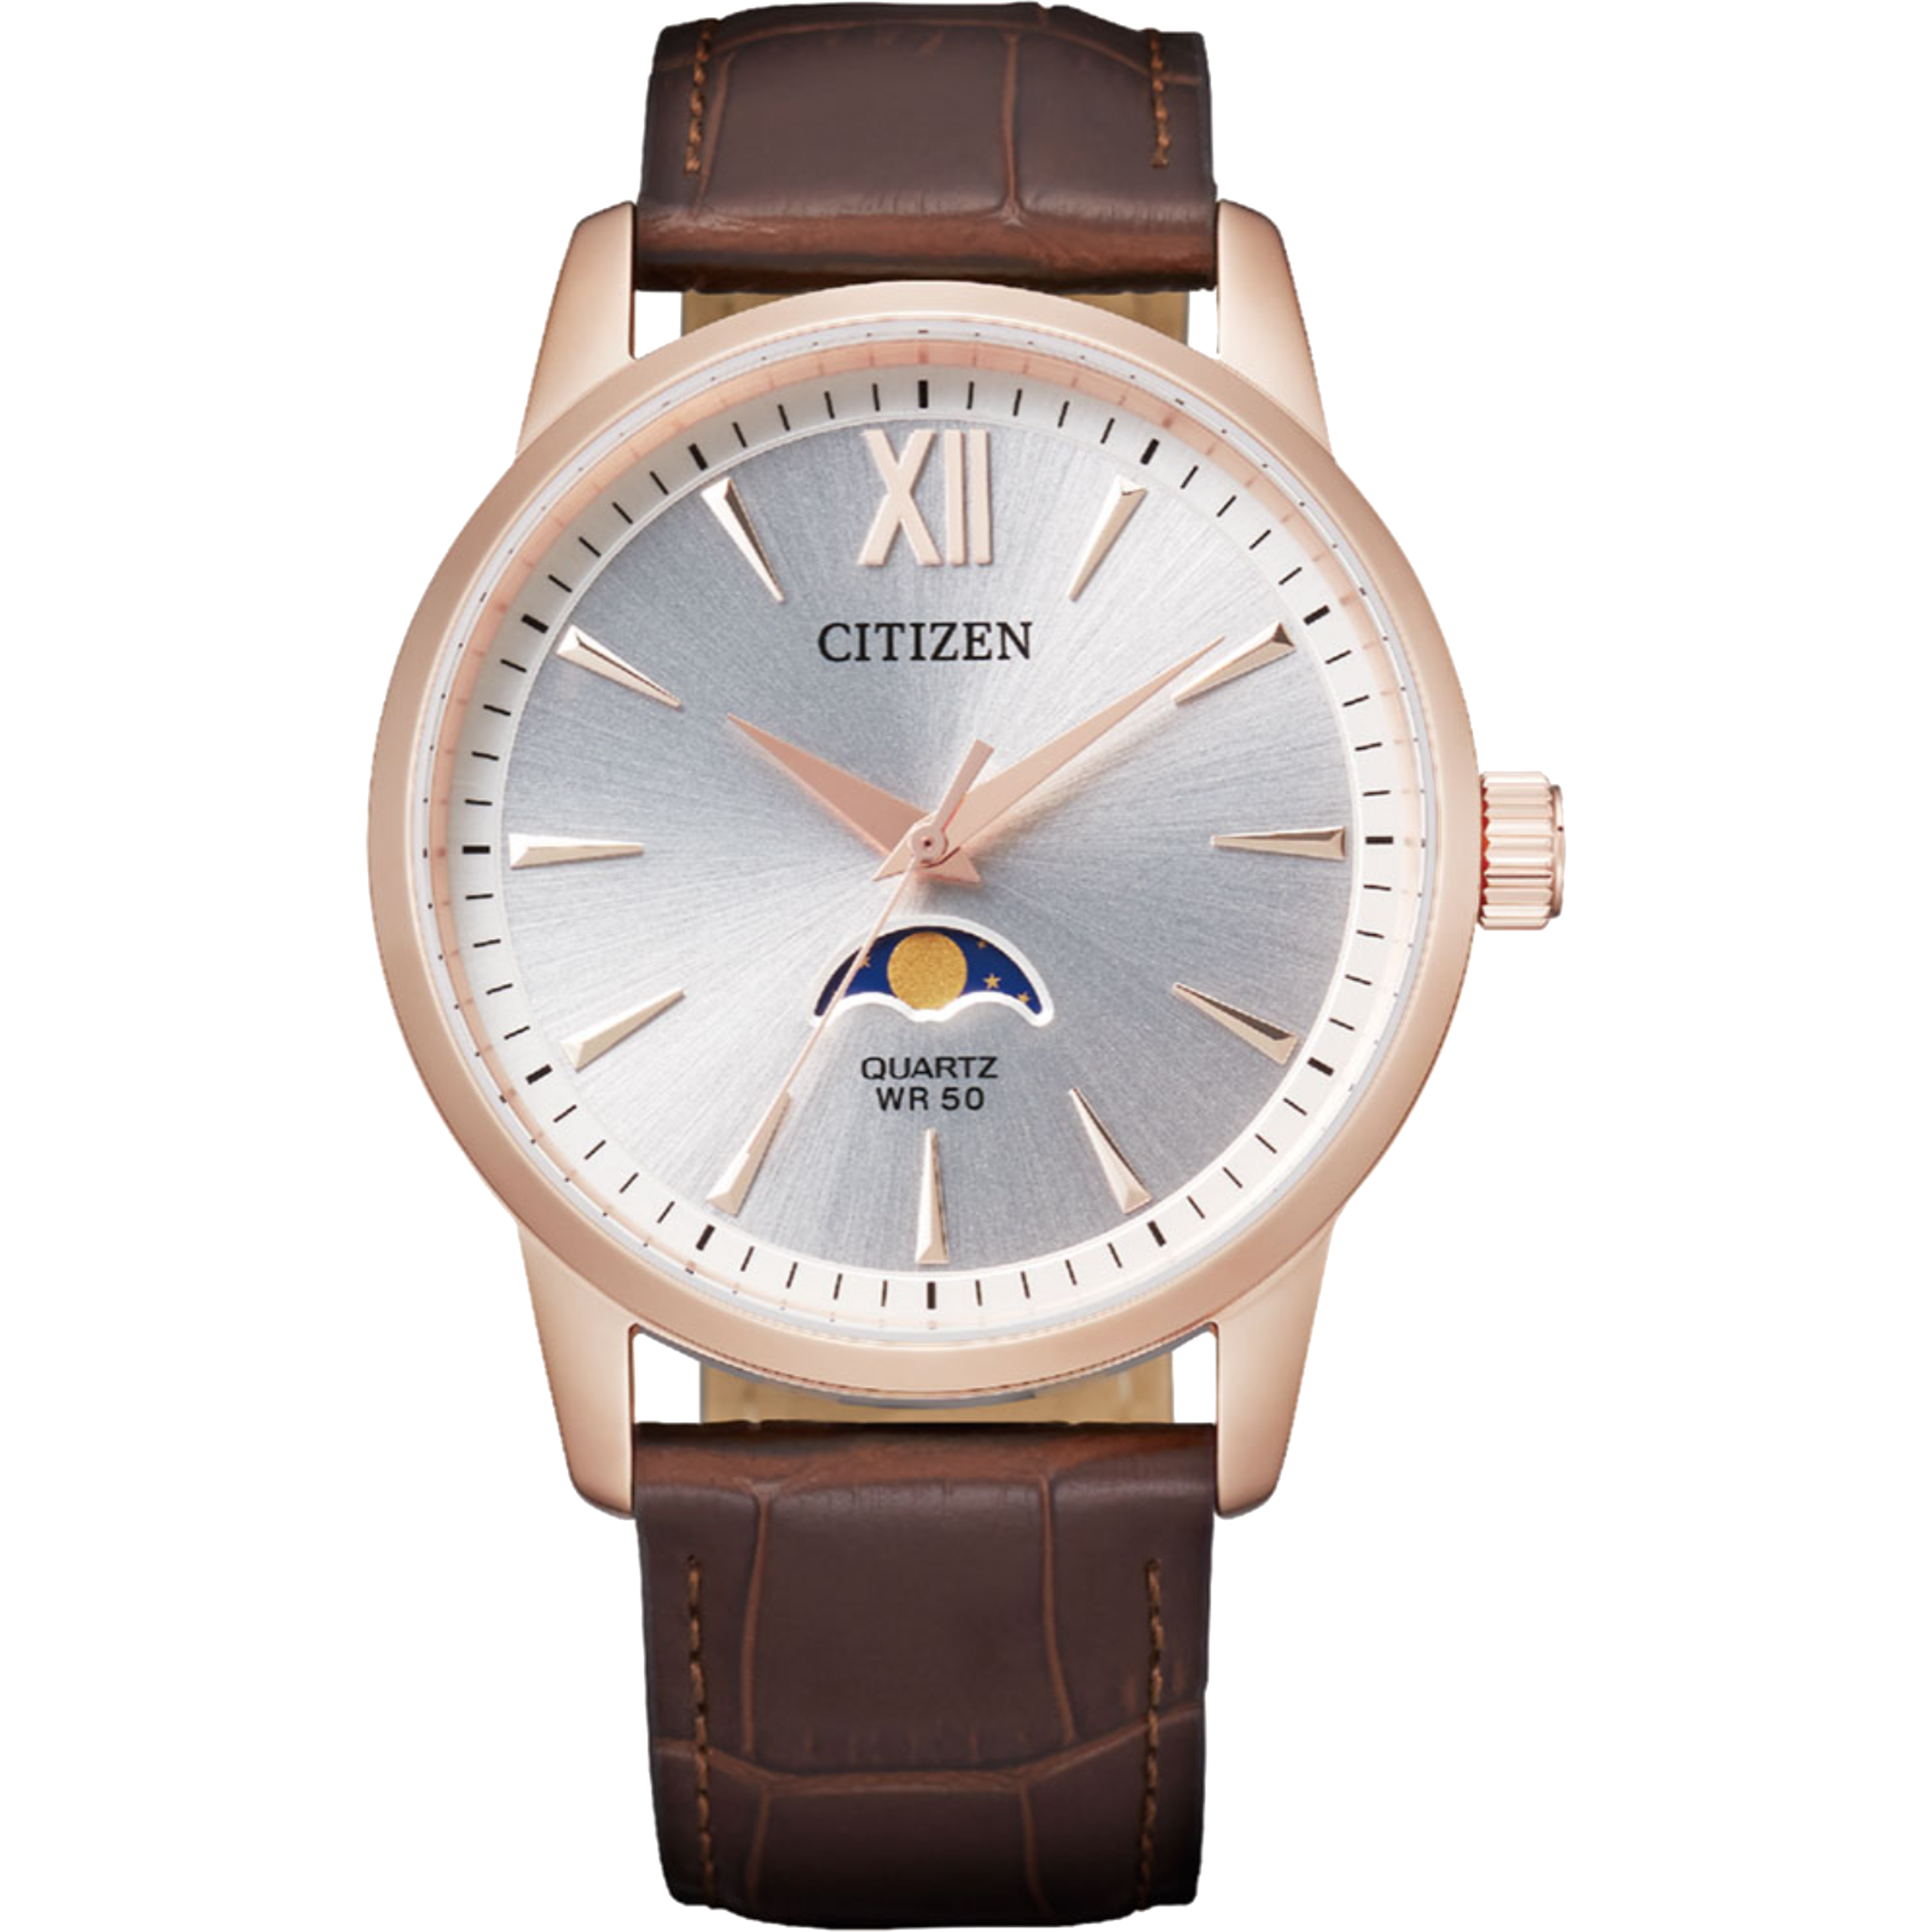 שעון יד לגבר Citizen AK5003-05A 42mm - צבע רוז גולד/עור חום אחריות לשנה ע"י היבואן